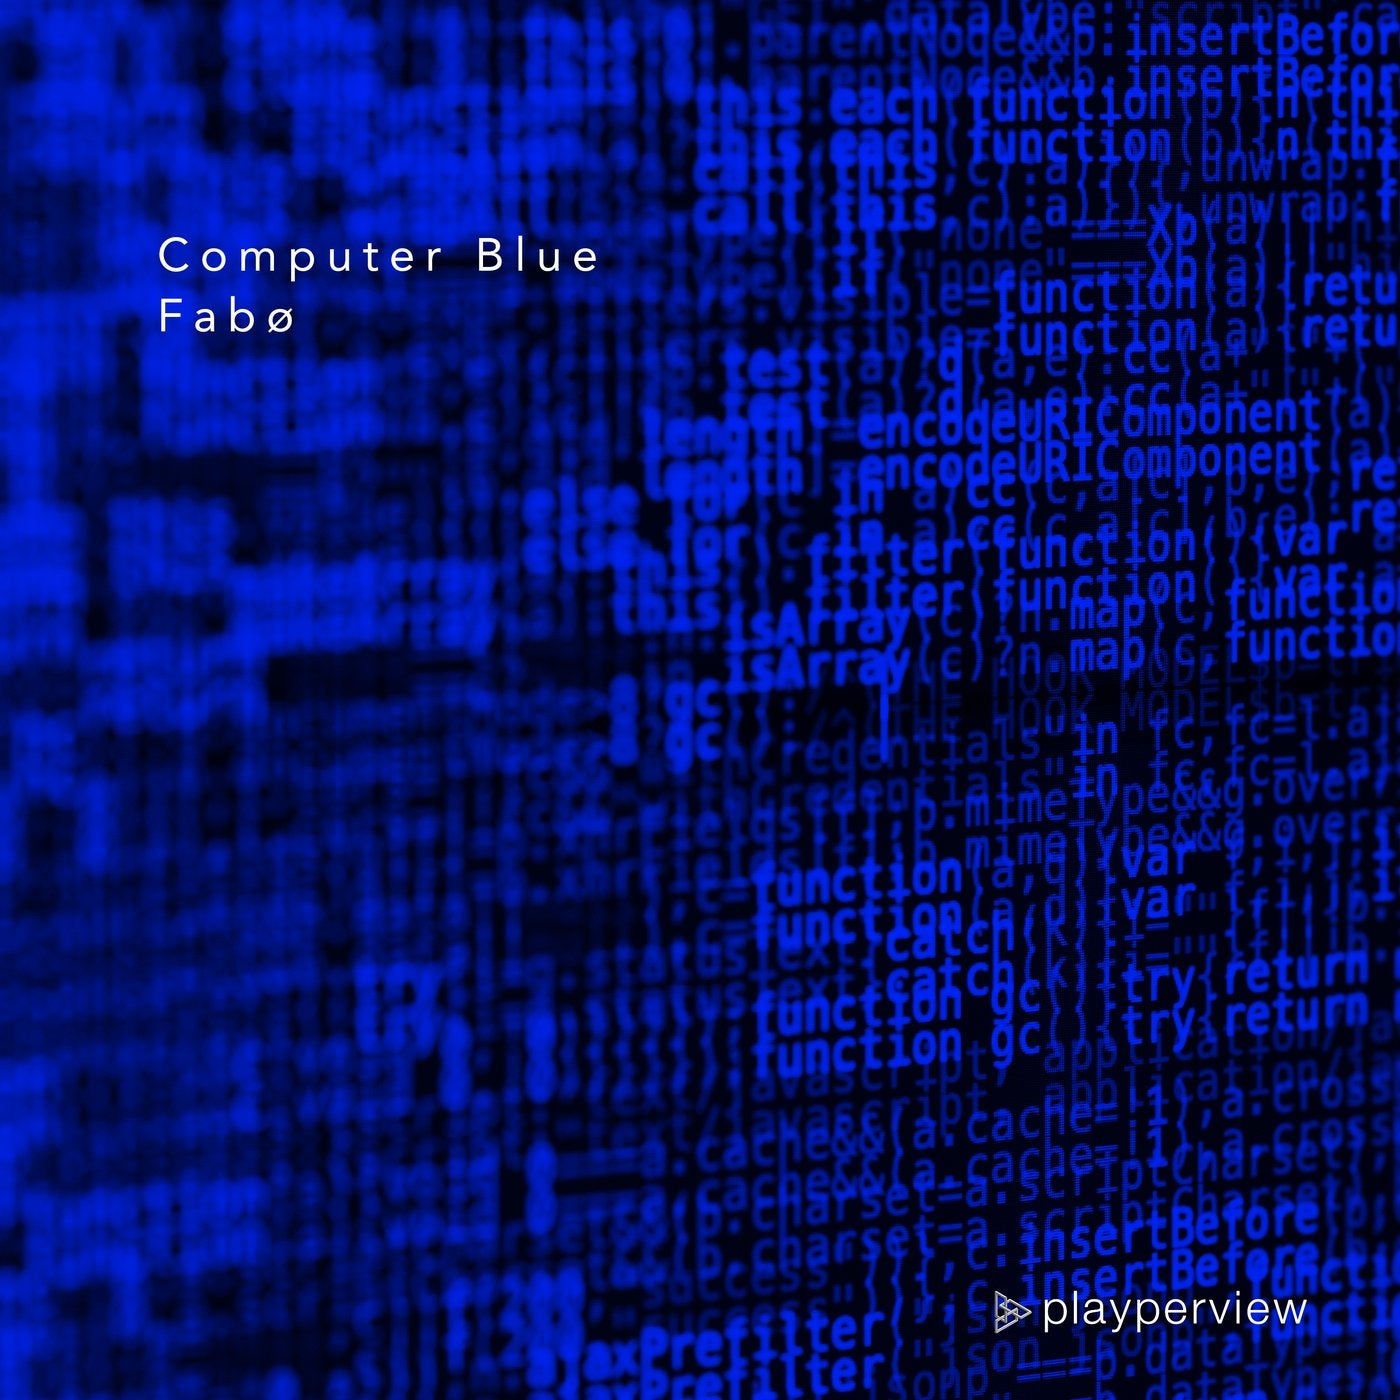 Computer Blue